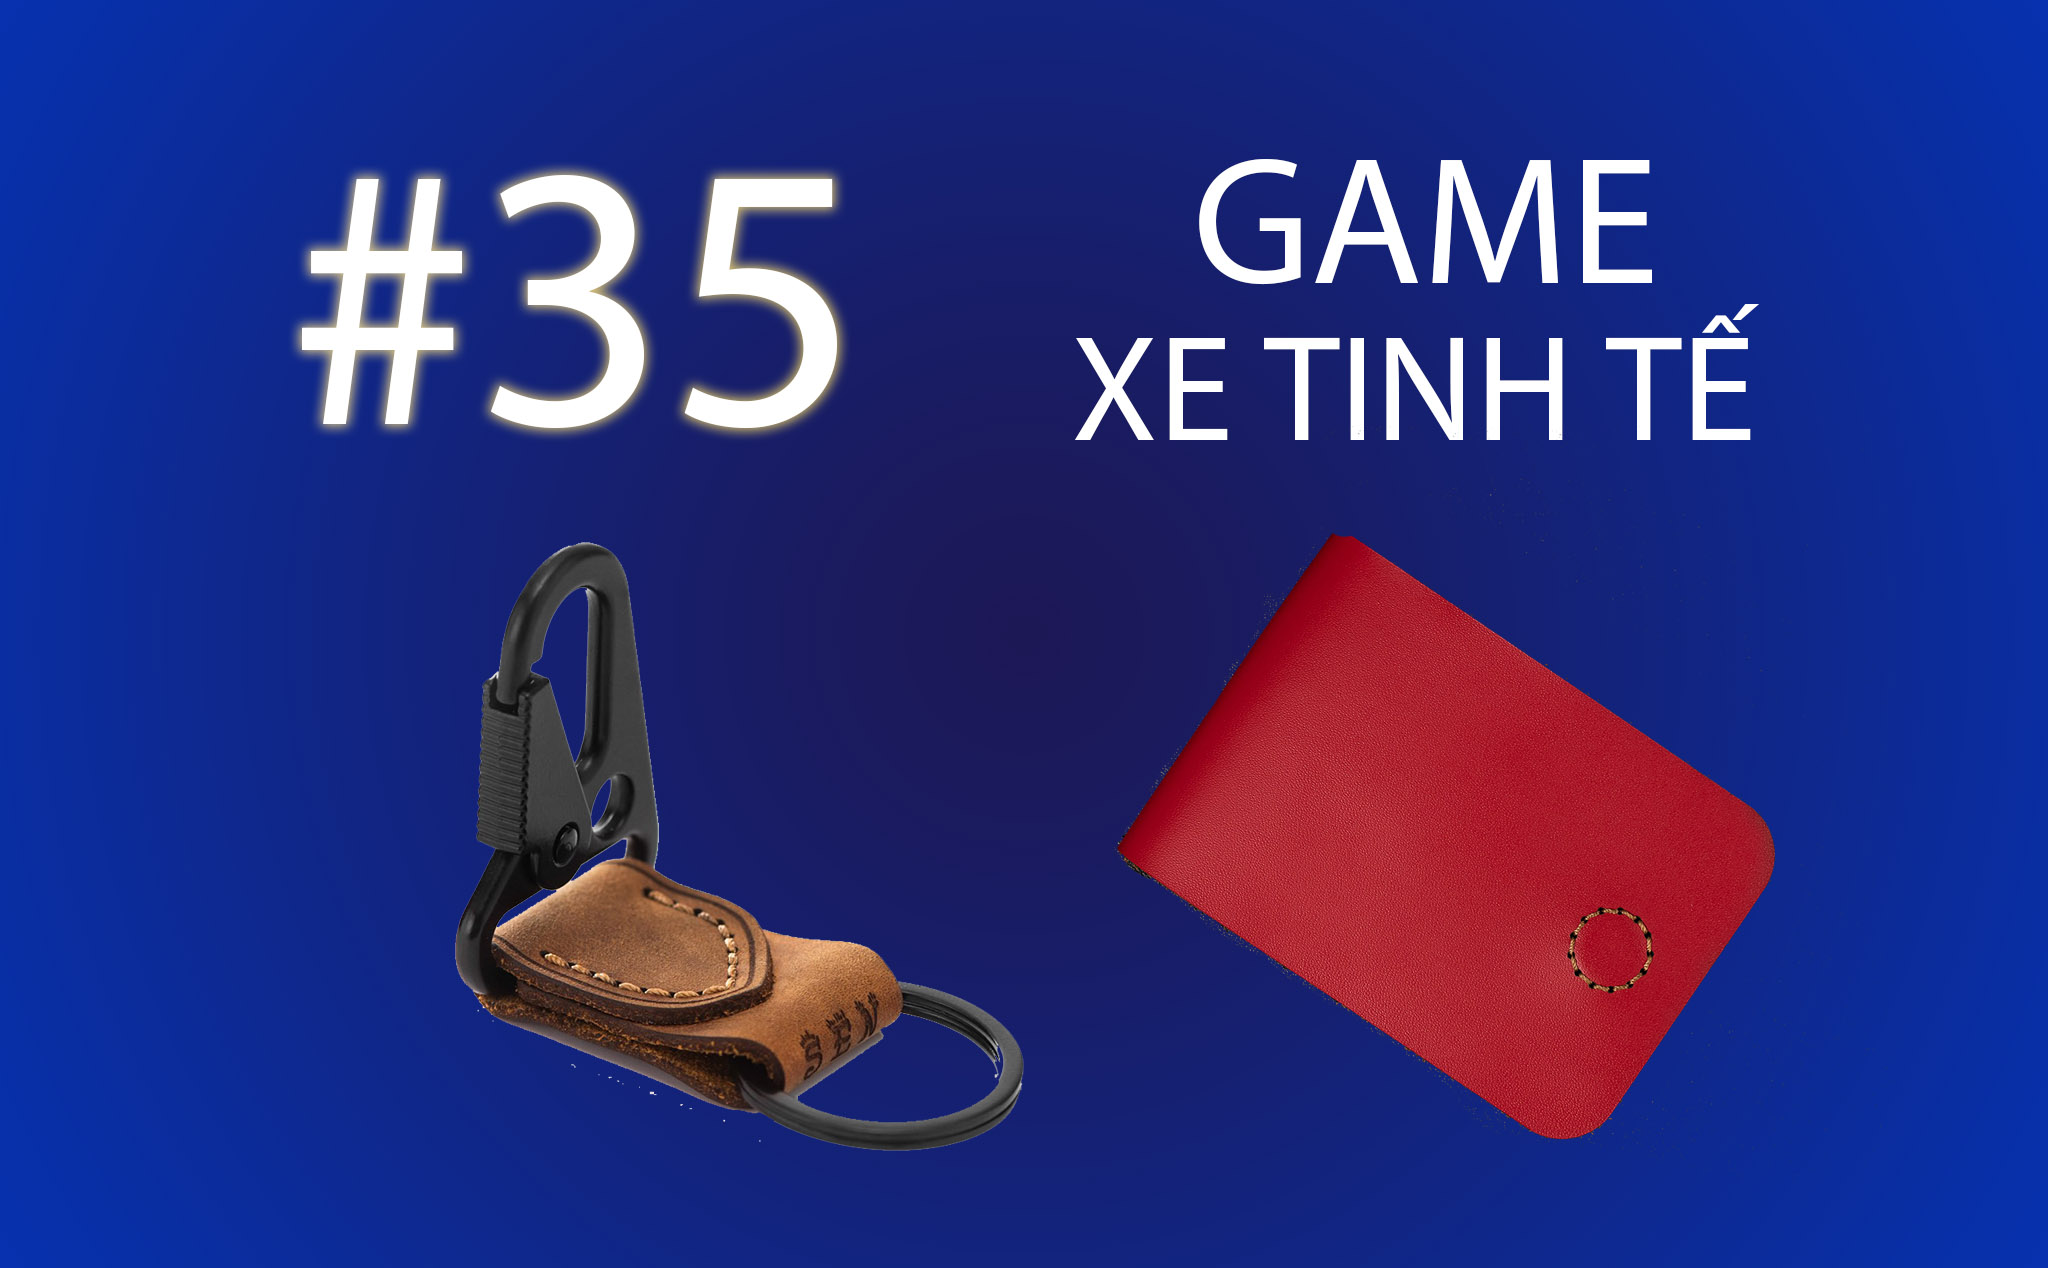 Game Xe Tinh tế #35 : Tặng Ví SEN 3 và móc khoá SEN